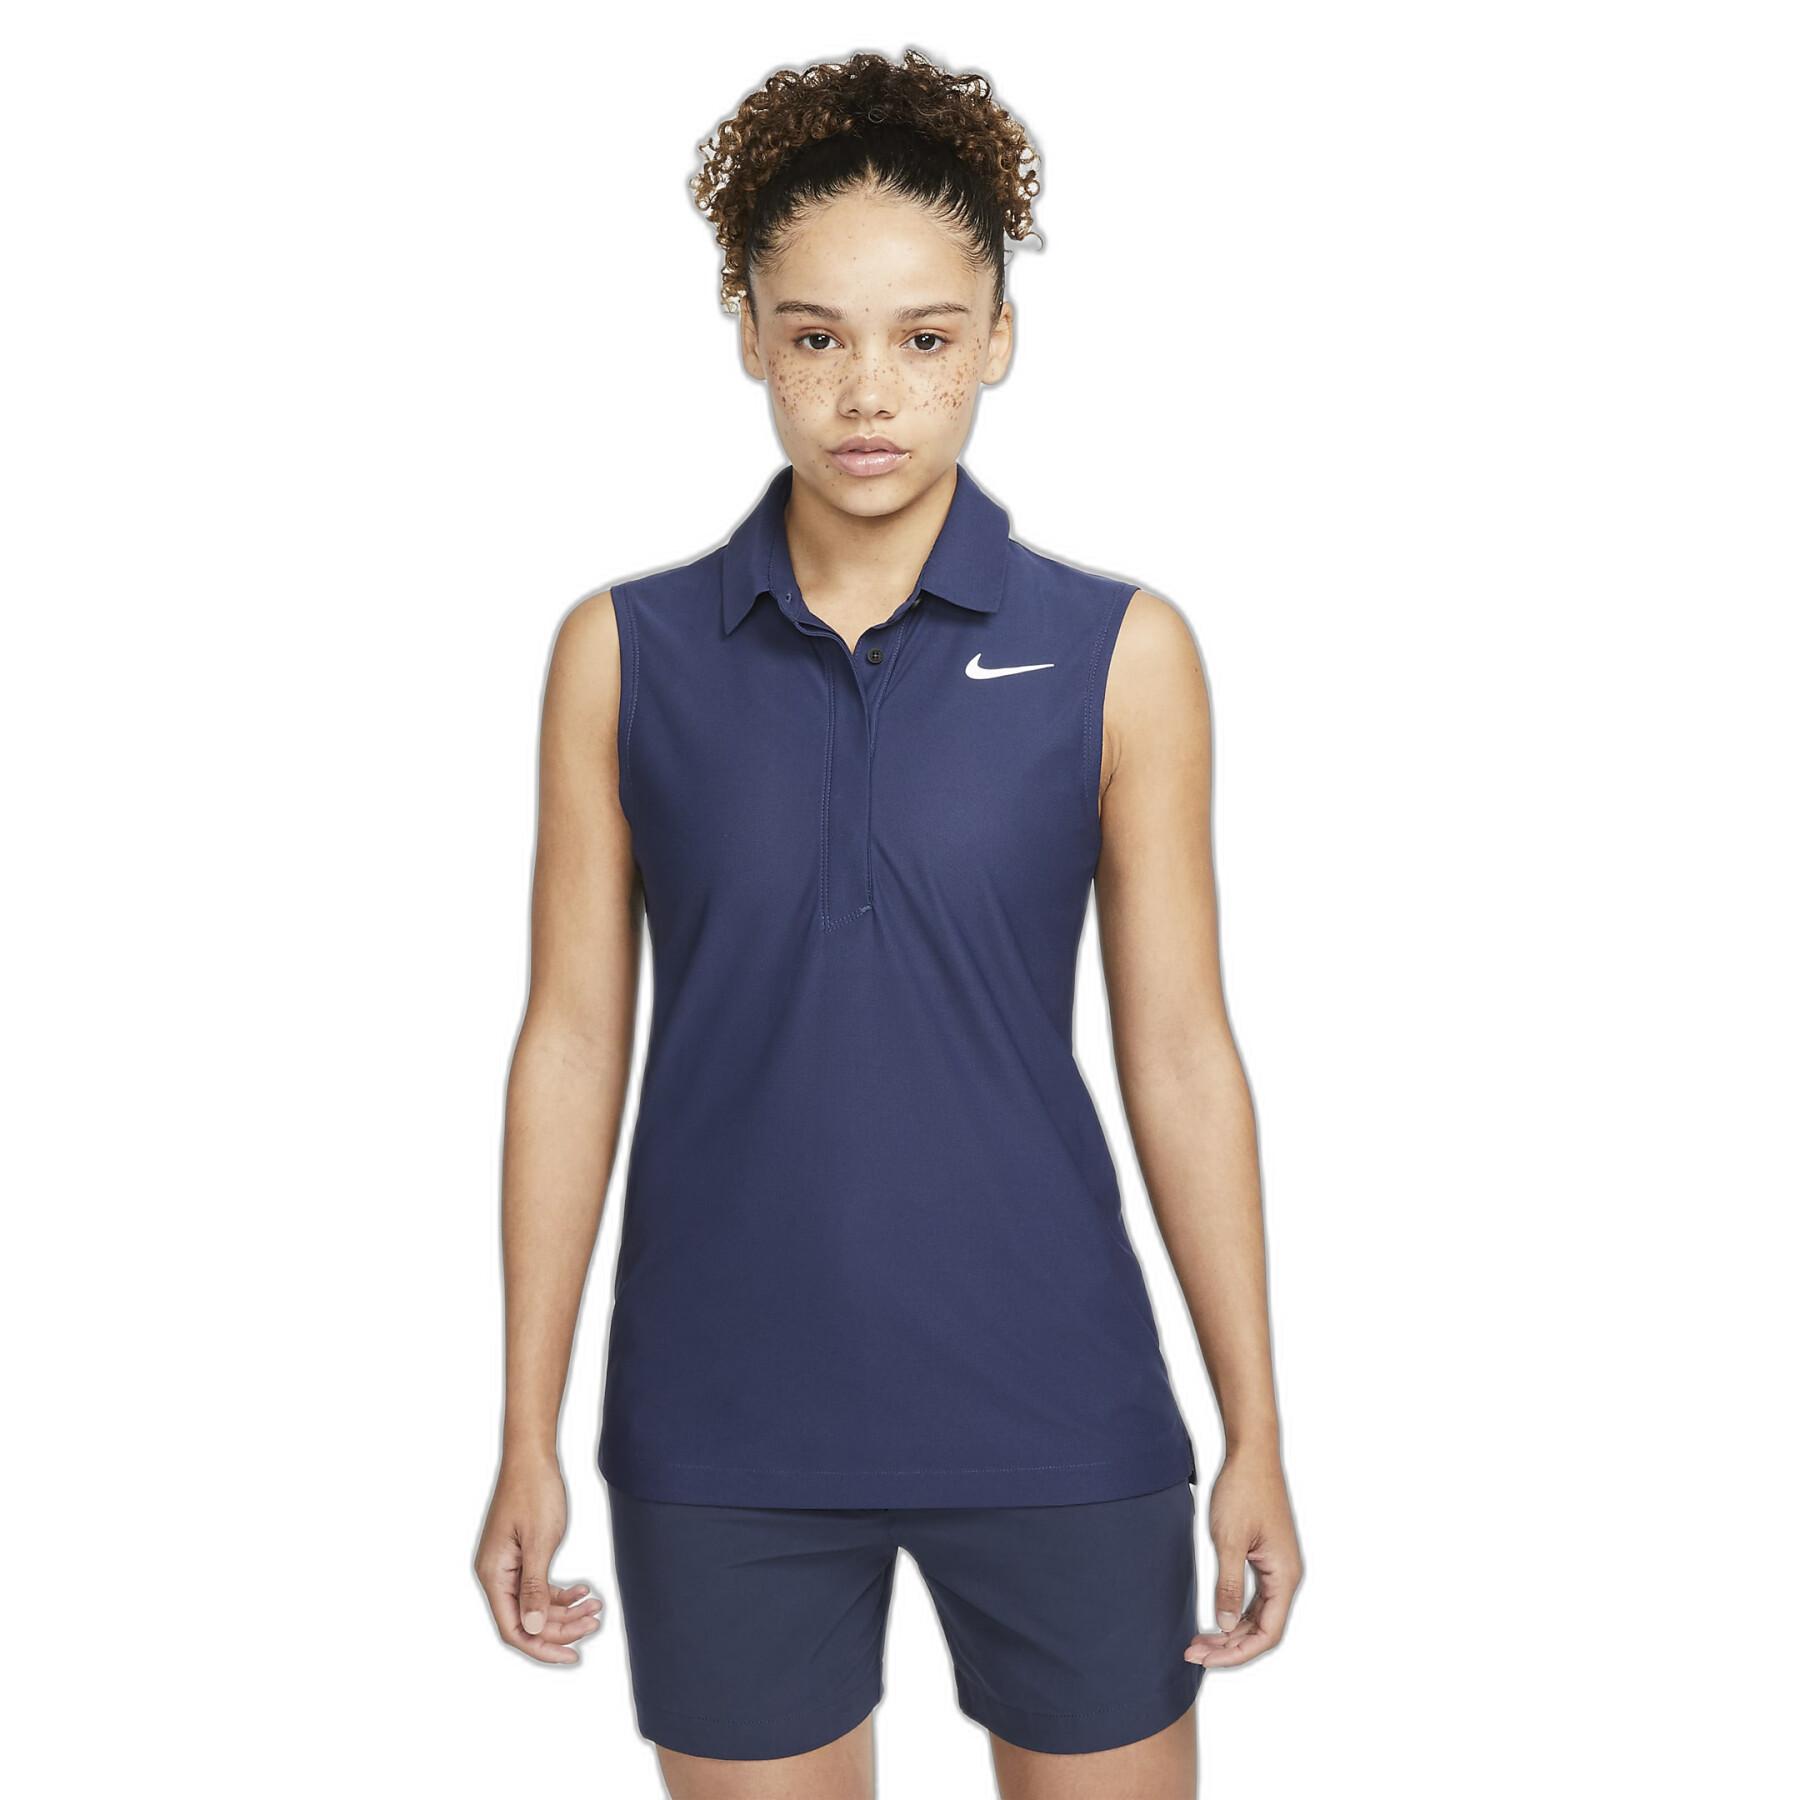 Women's polo shirt Nike Tour Golf